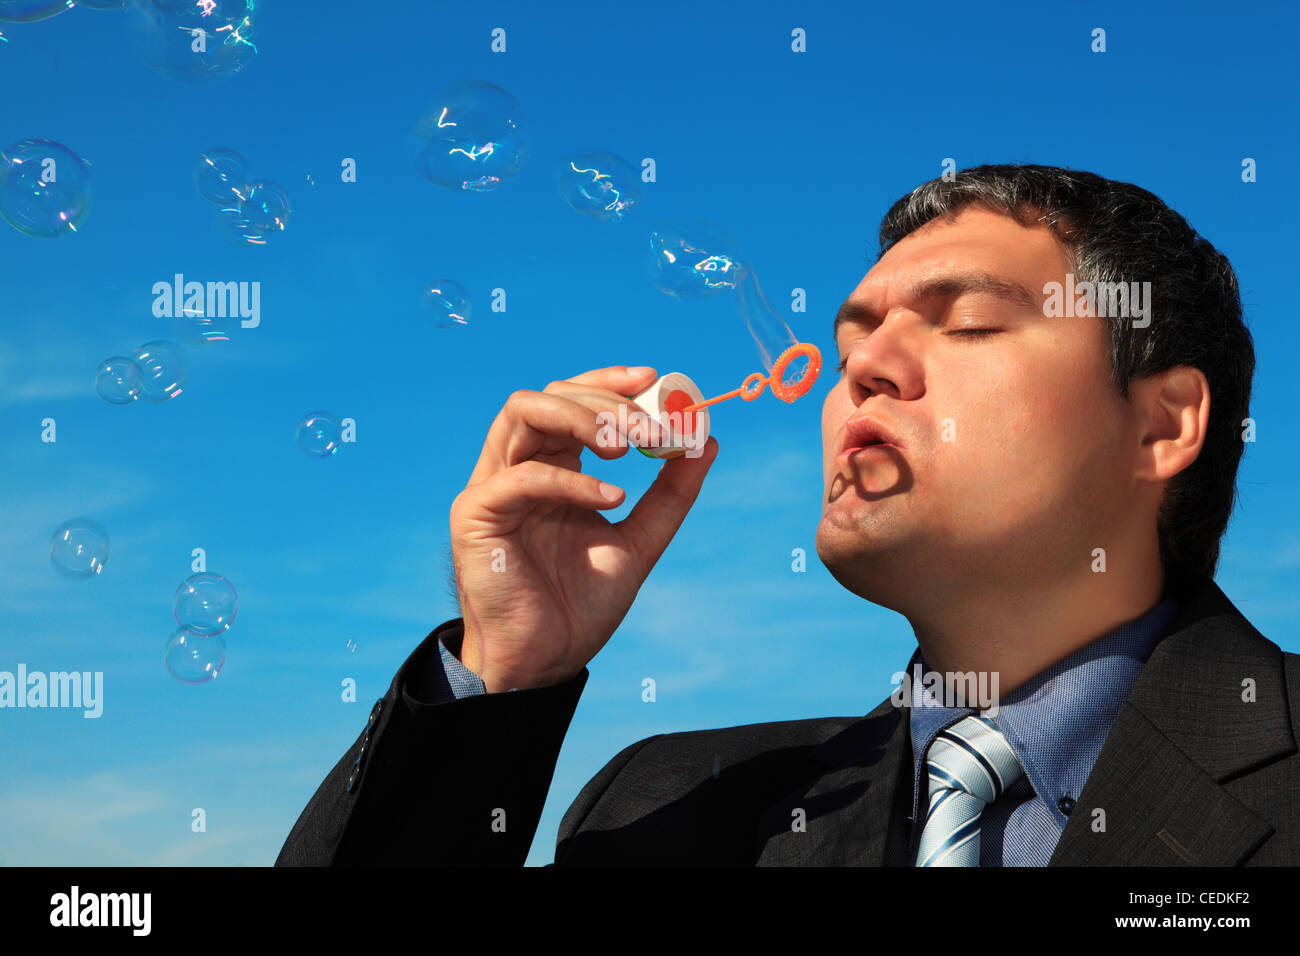 businessman blows soap bubbles against sky Stock Photo